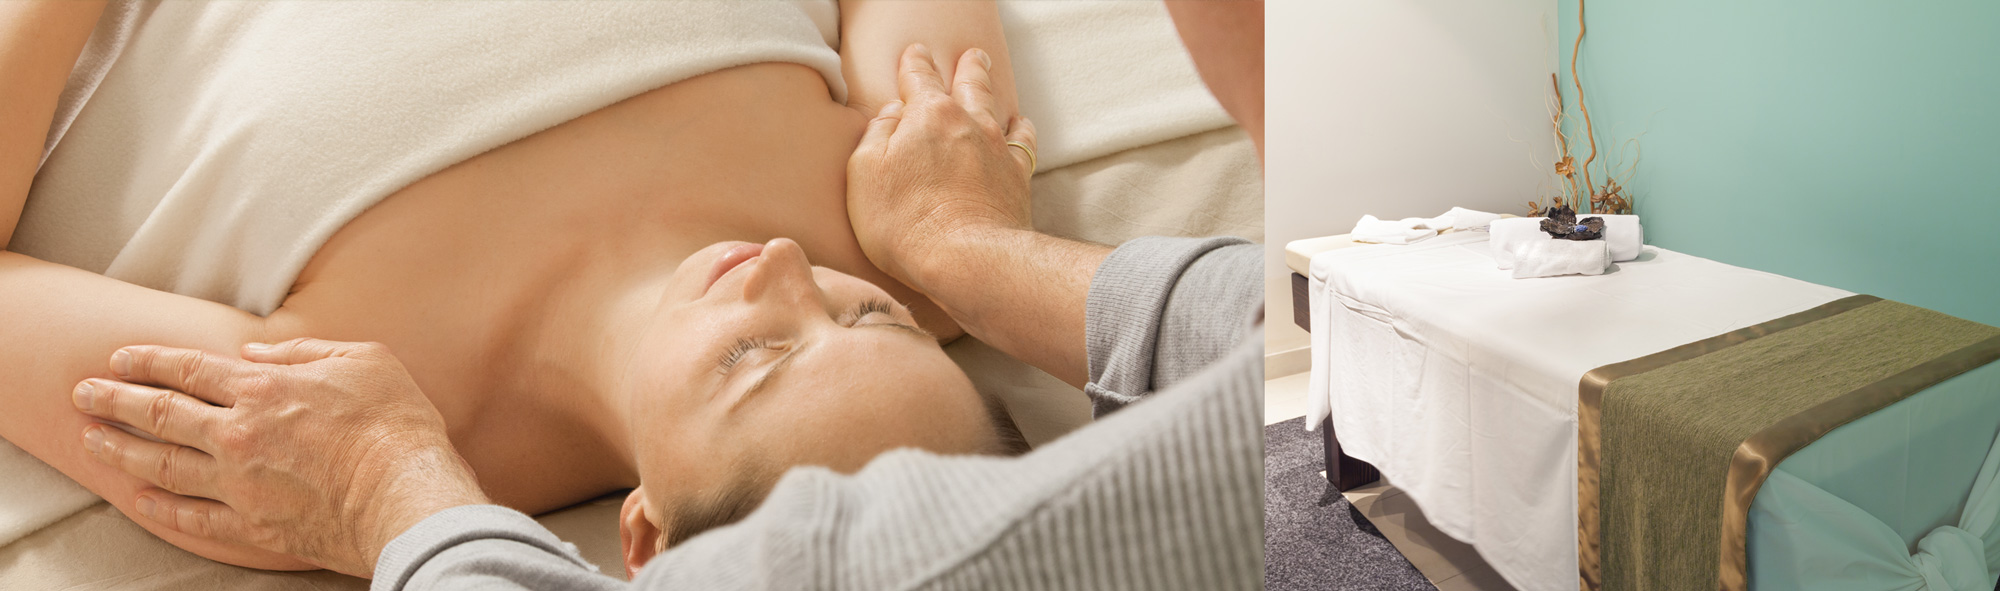 Wellness Massage buchen in der Naehe